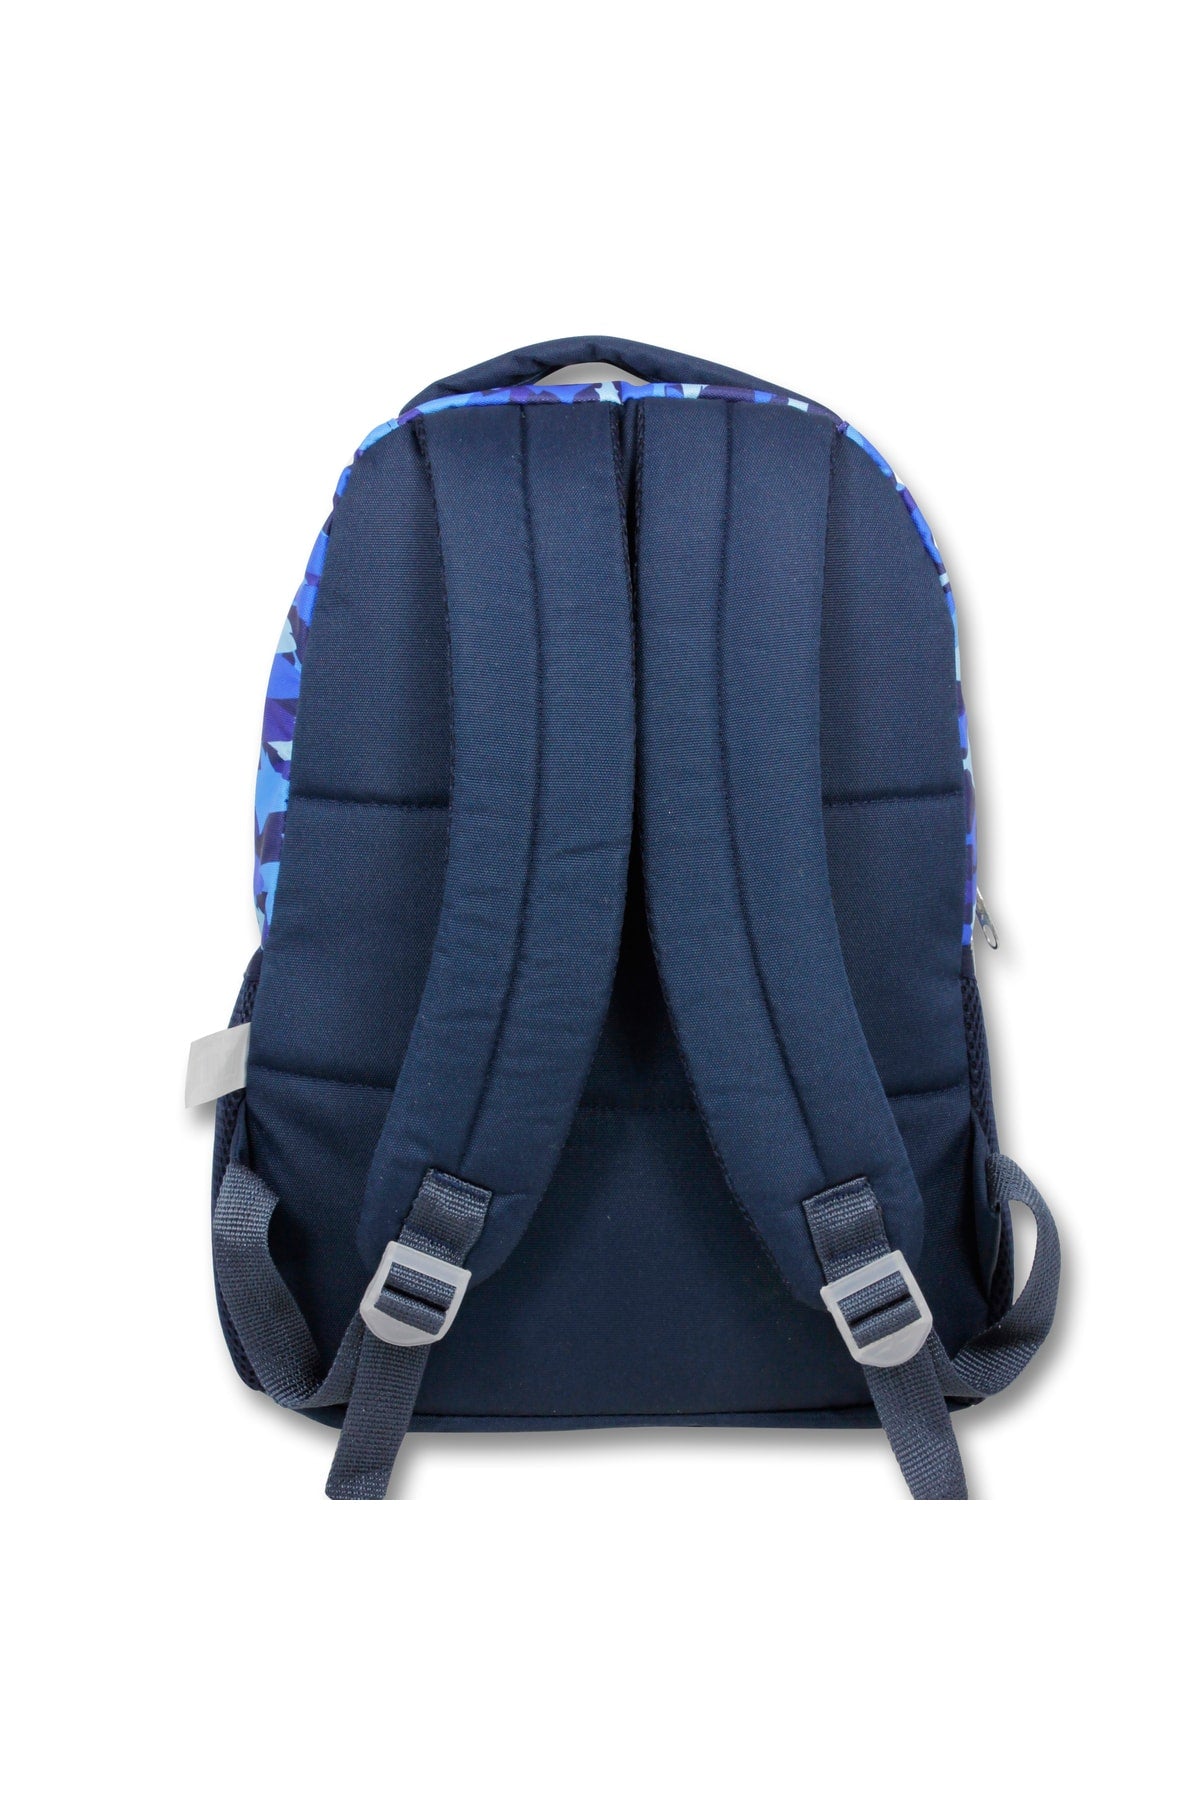 -Umit Bag Licensed Robot School Backpack -Nutrition And Pencil Bag Set